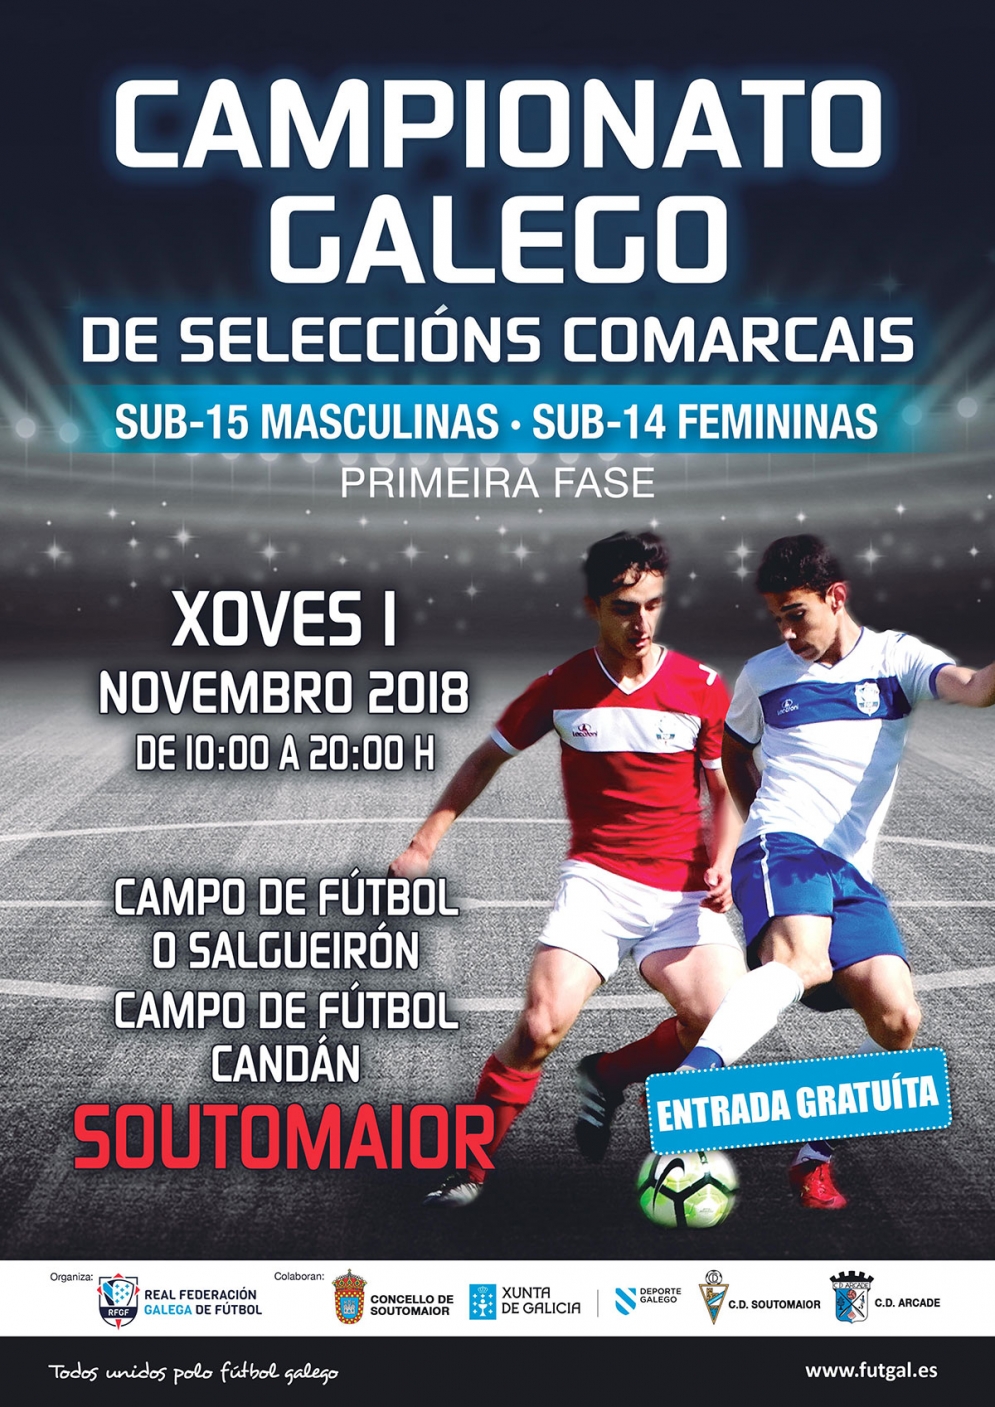 Campionato Galego de Seleccións Comarcais